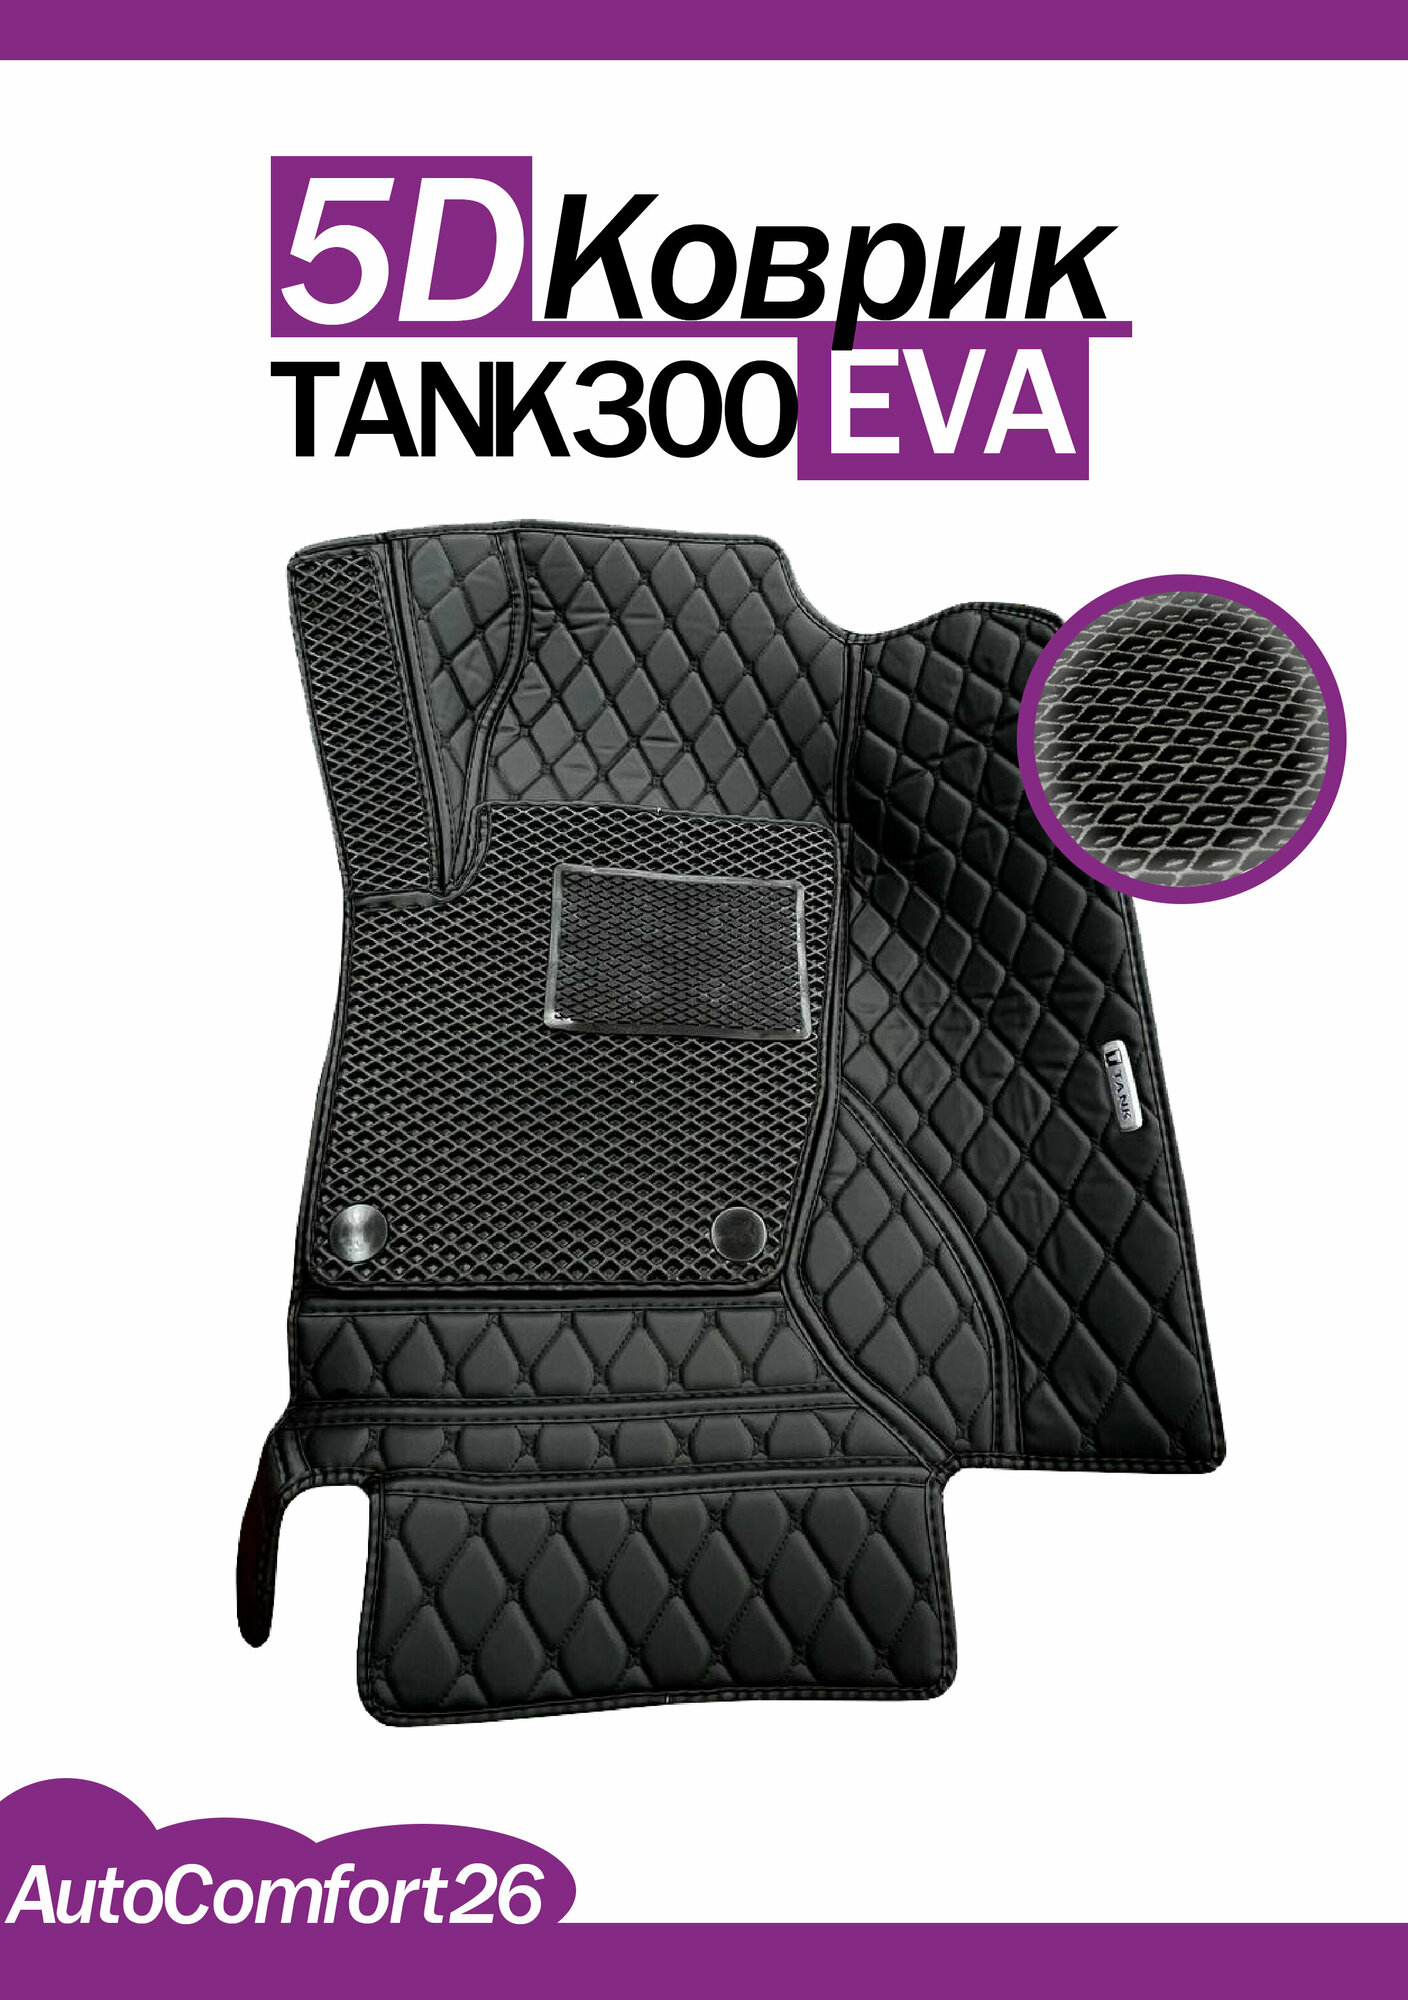 Кожаные 5D-коврики для TANK300 EVA